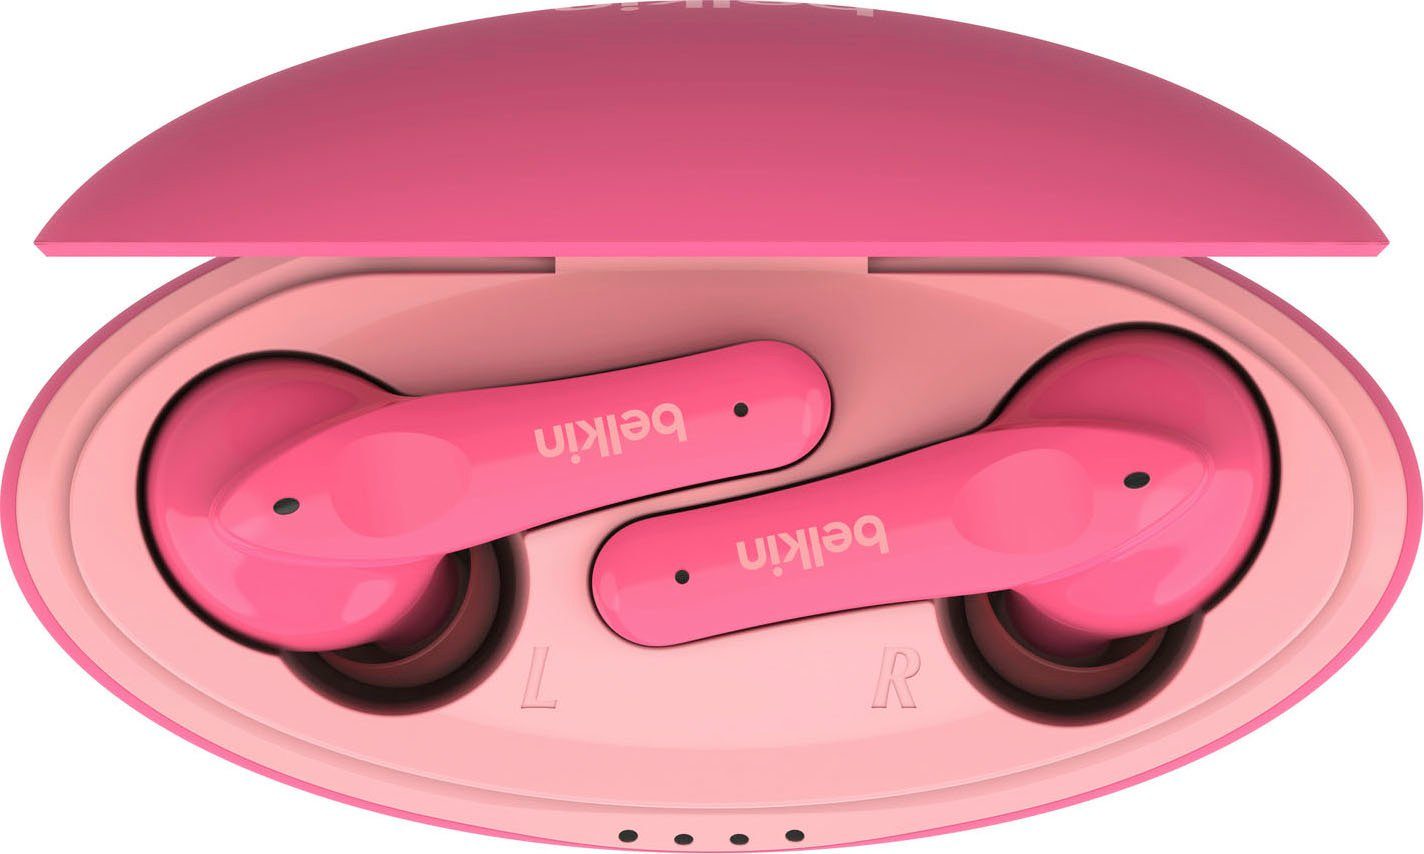 Belkin SOUNDFORM NANO - dB pink begrenzt; Kinder wireless Kopfhörer 85 In-Ear-Kopfhörer Kopfhörer) (auf am